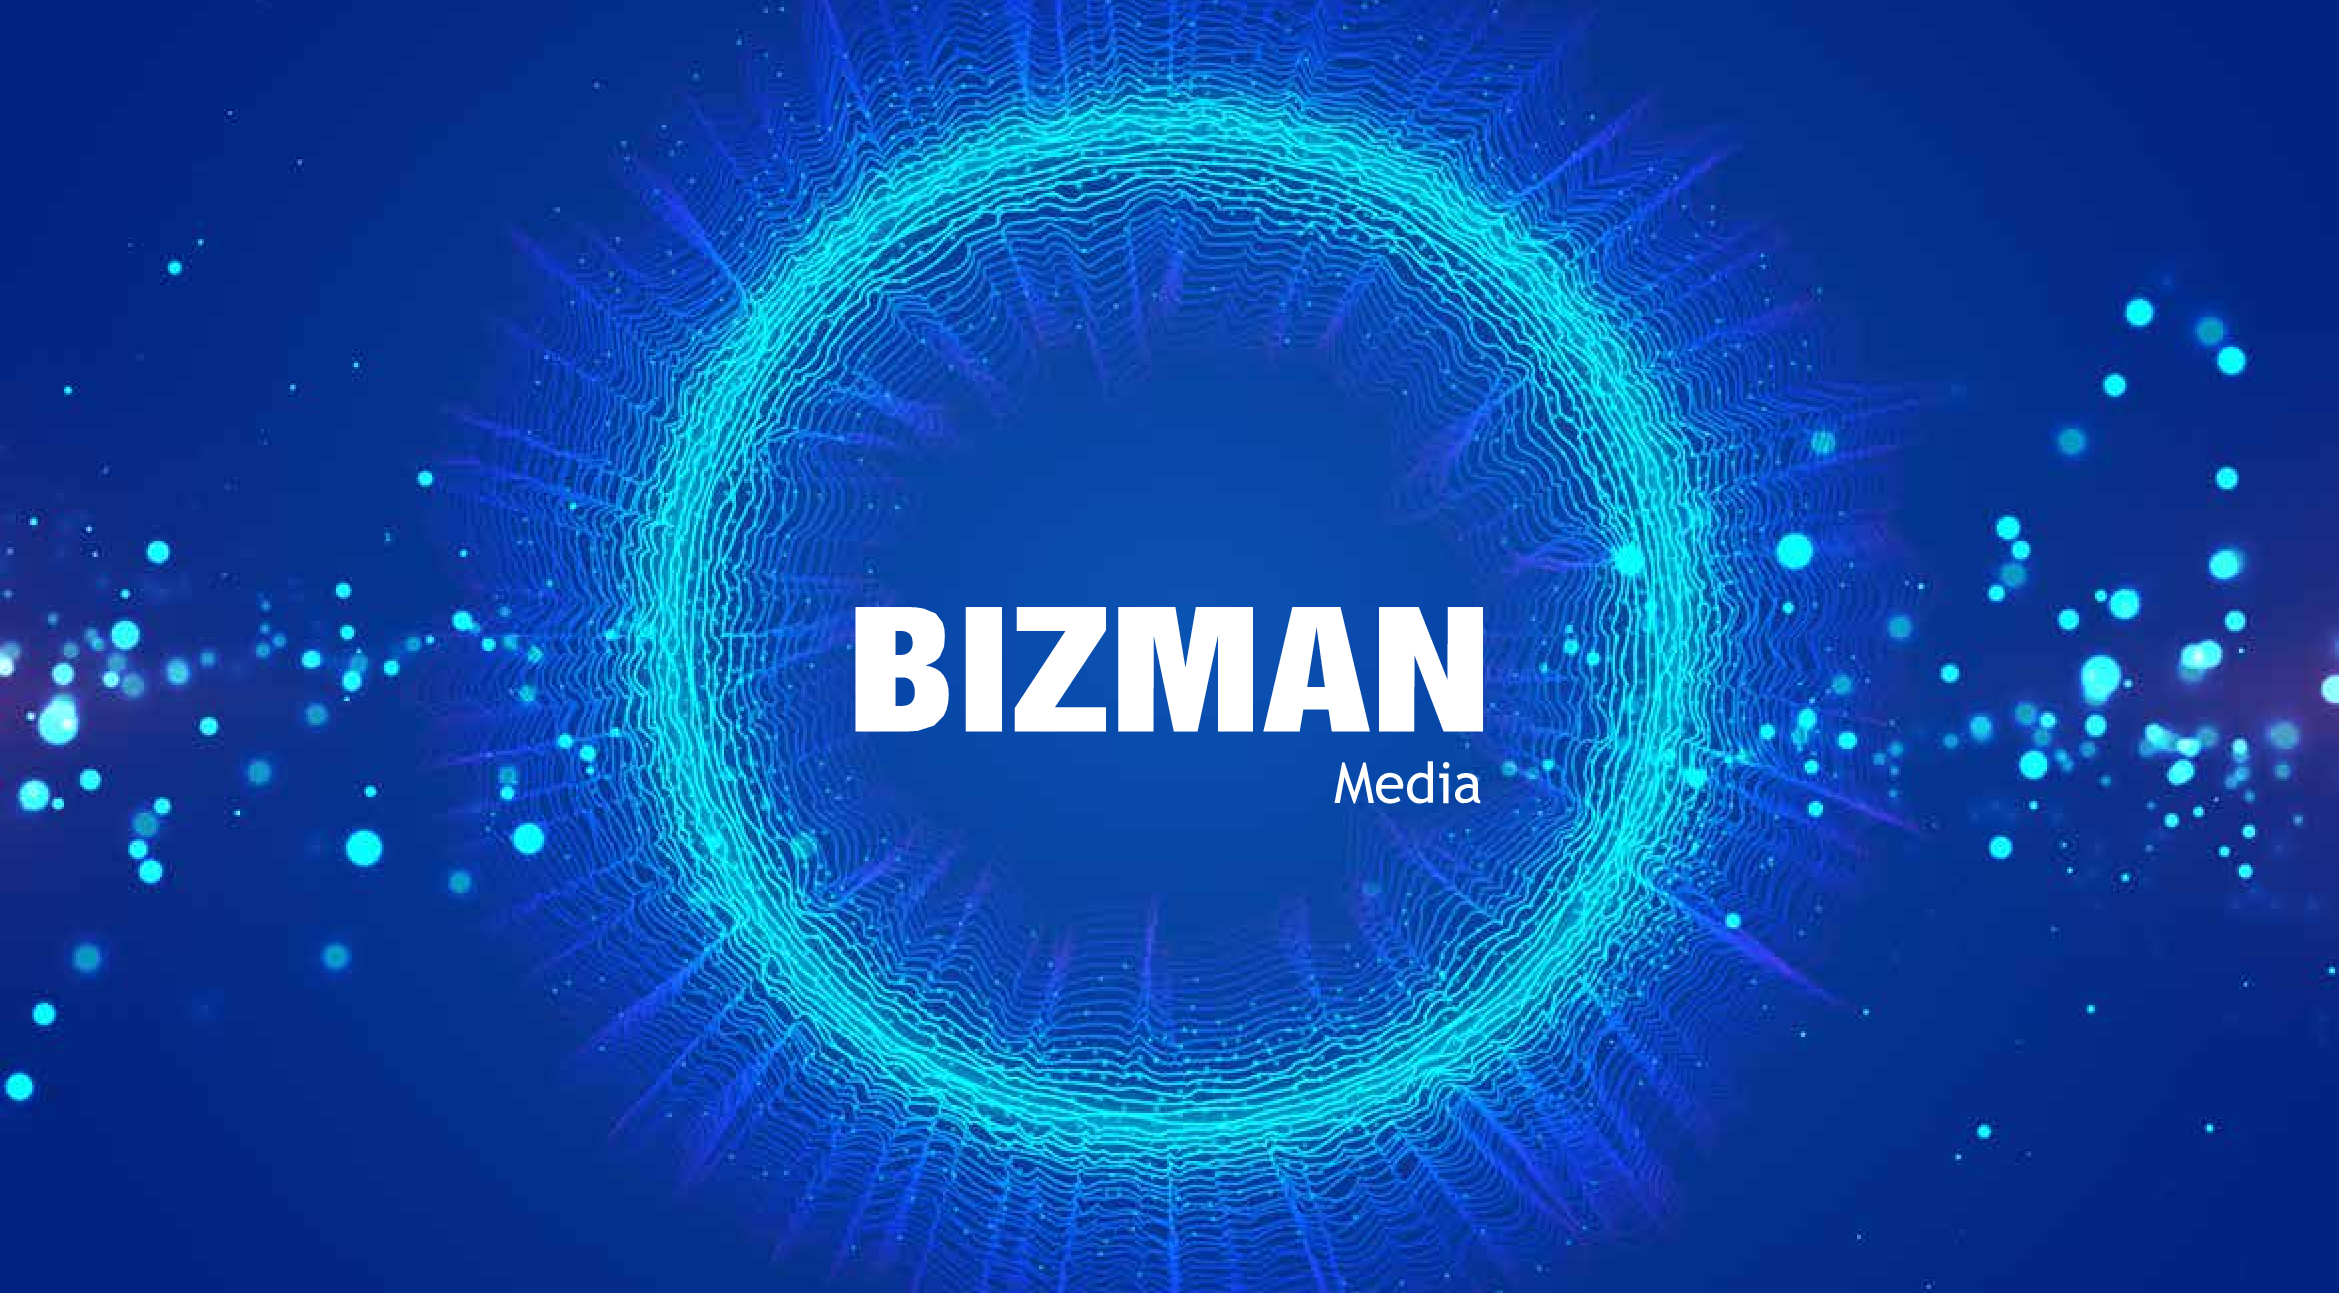 Bizman Media thiết kế website cá nhân công ty doanh nghiệp